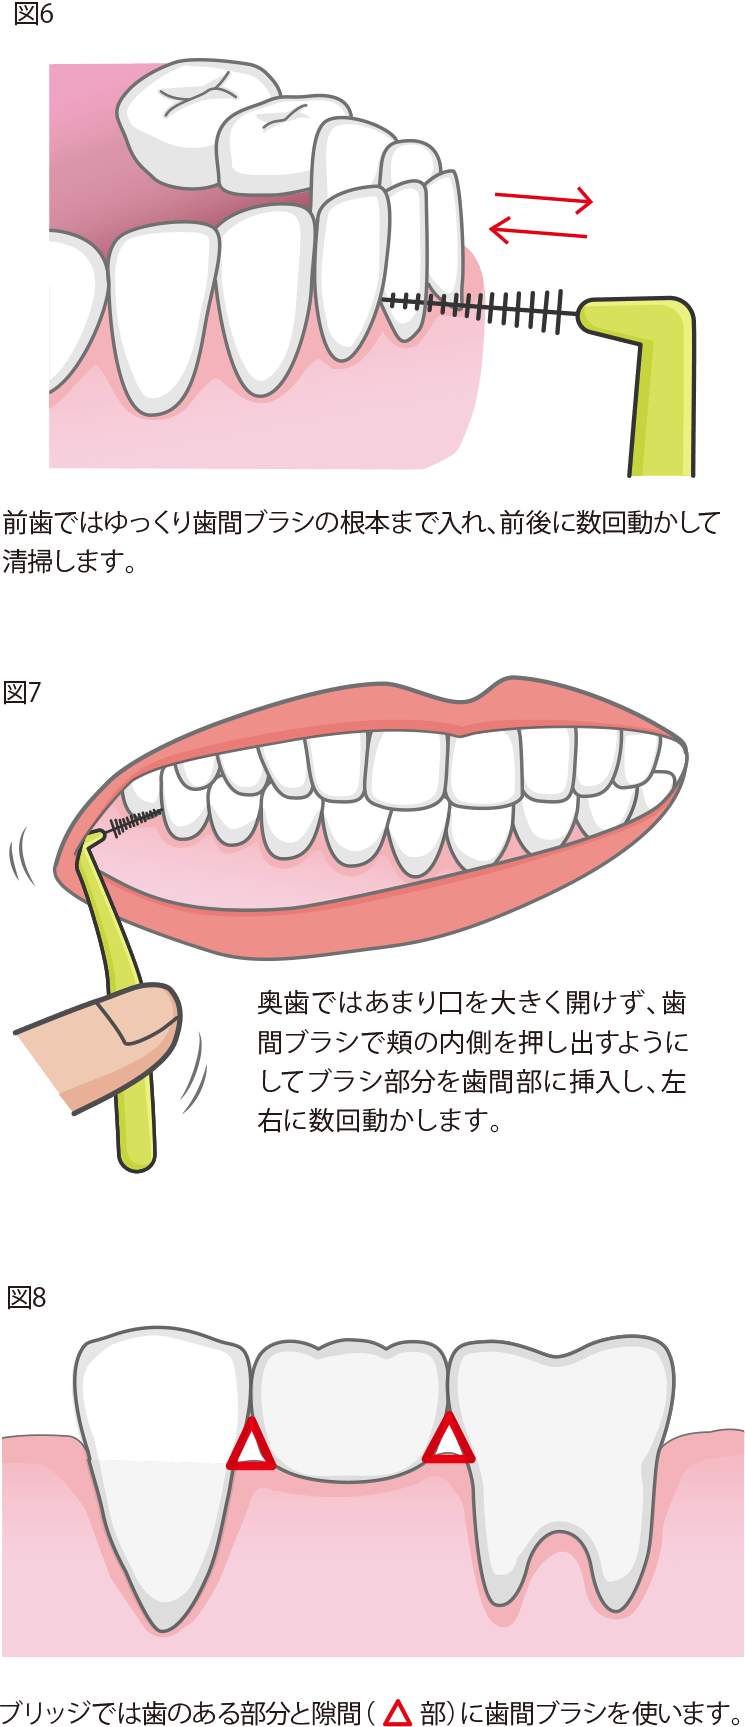 歯間ブラシの使用方法